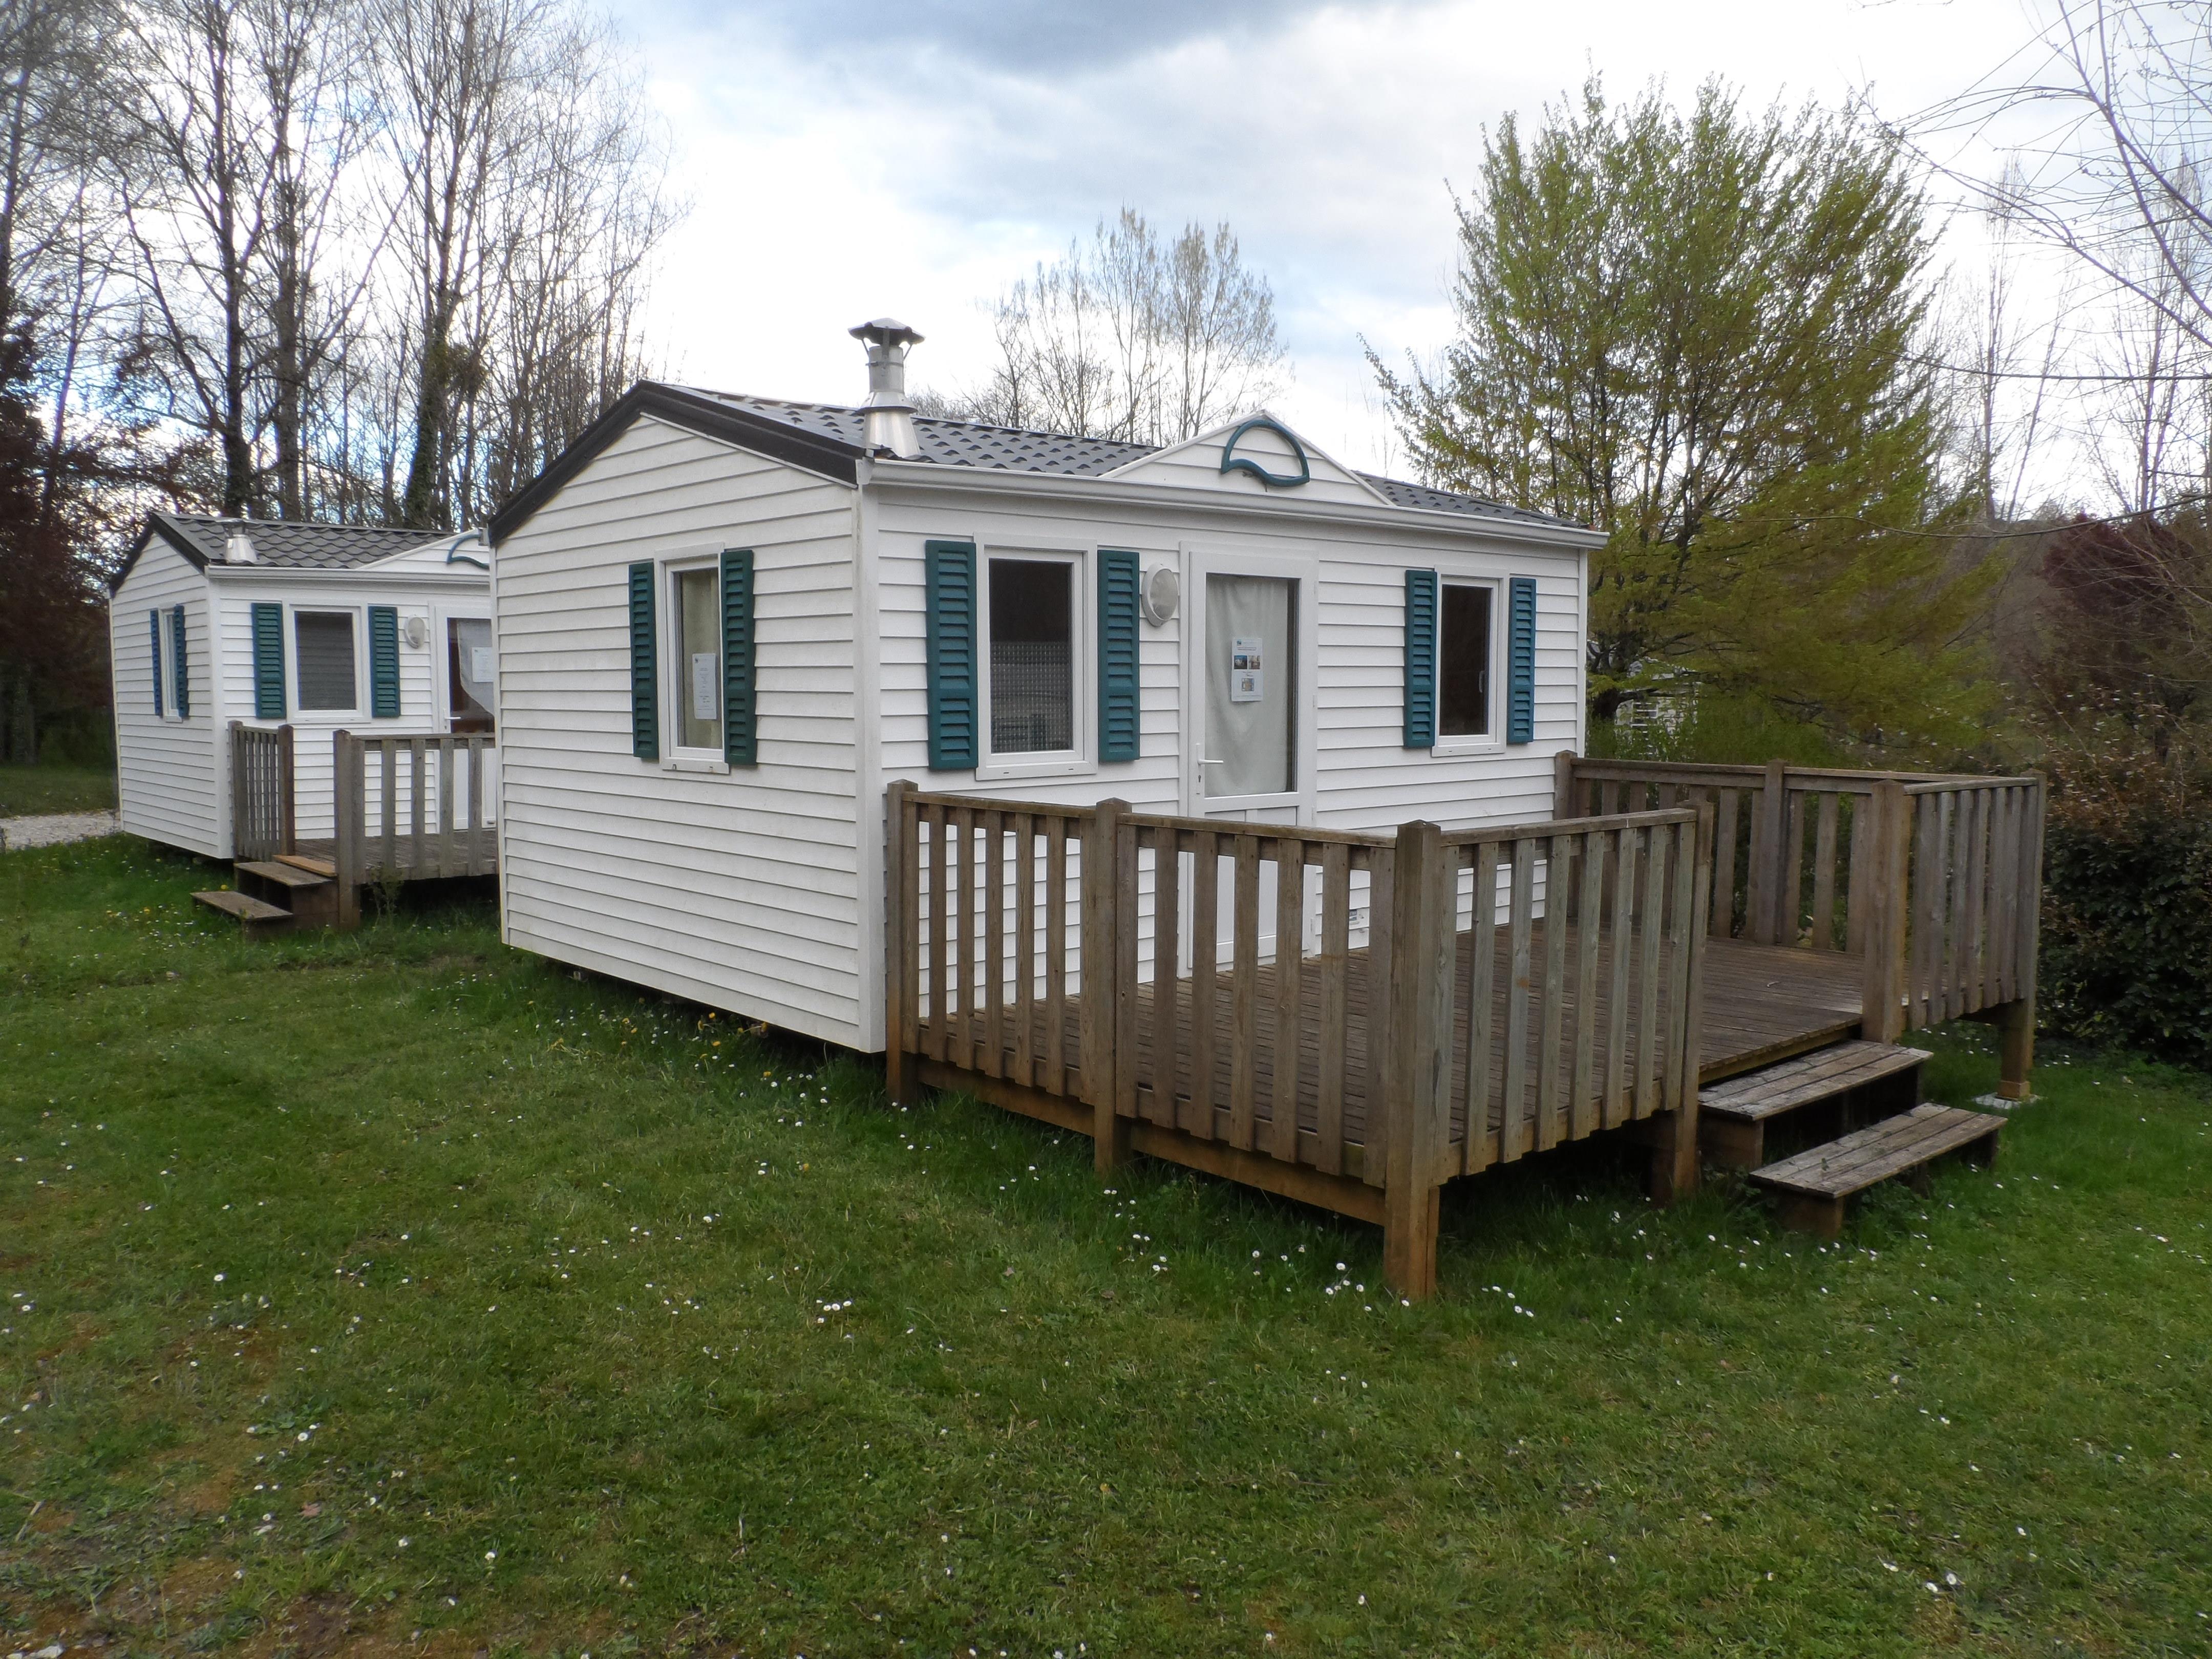 Petit mobil-home 2 chambres - terrasse en bois non couverte - 20m² (R14 -R15 - R21 + 038)